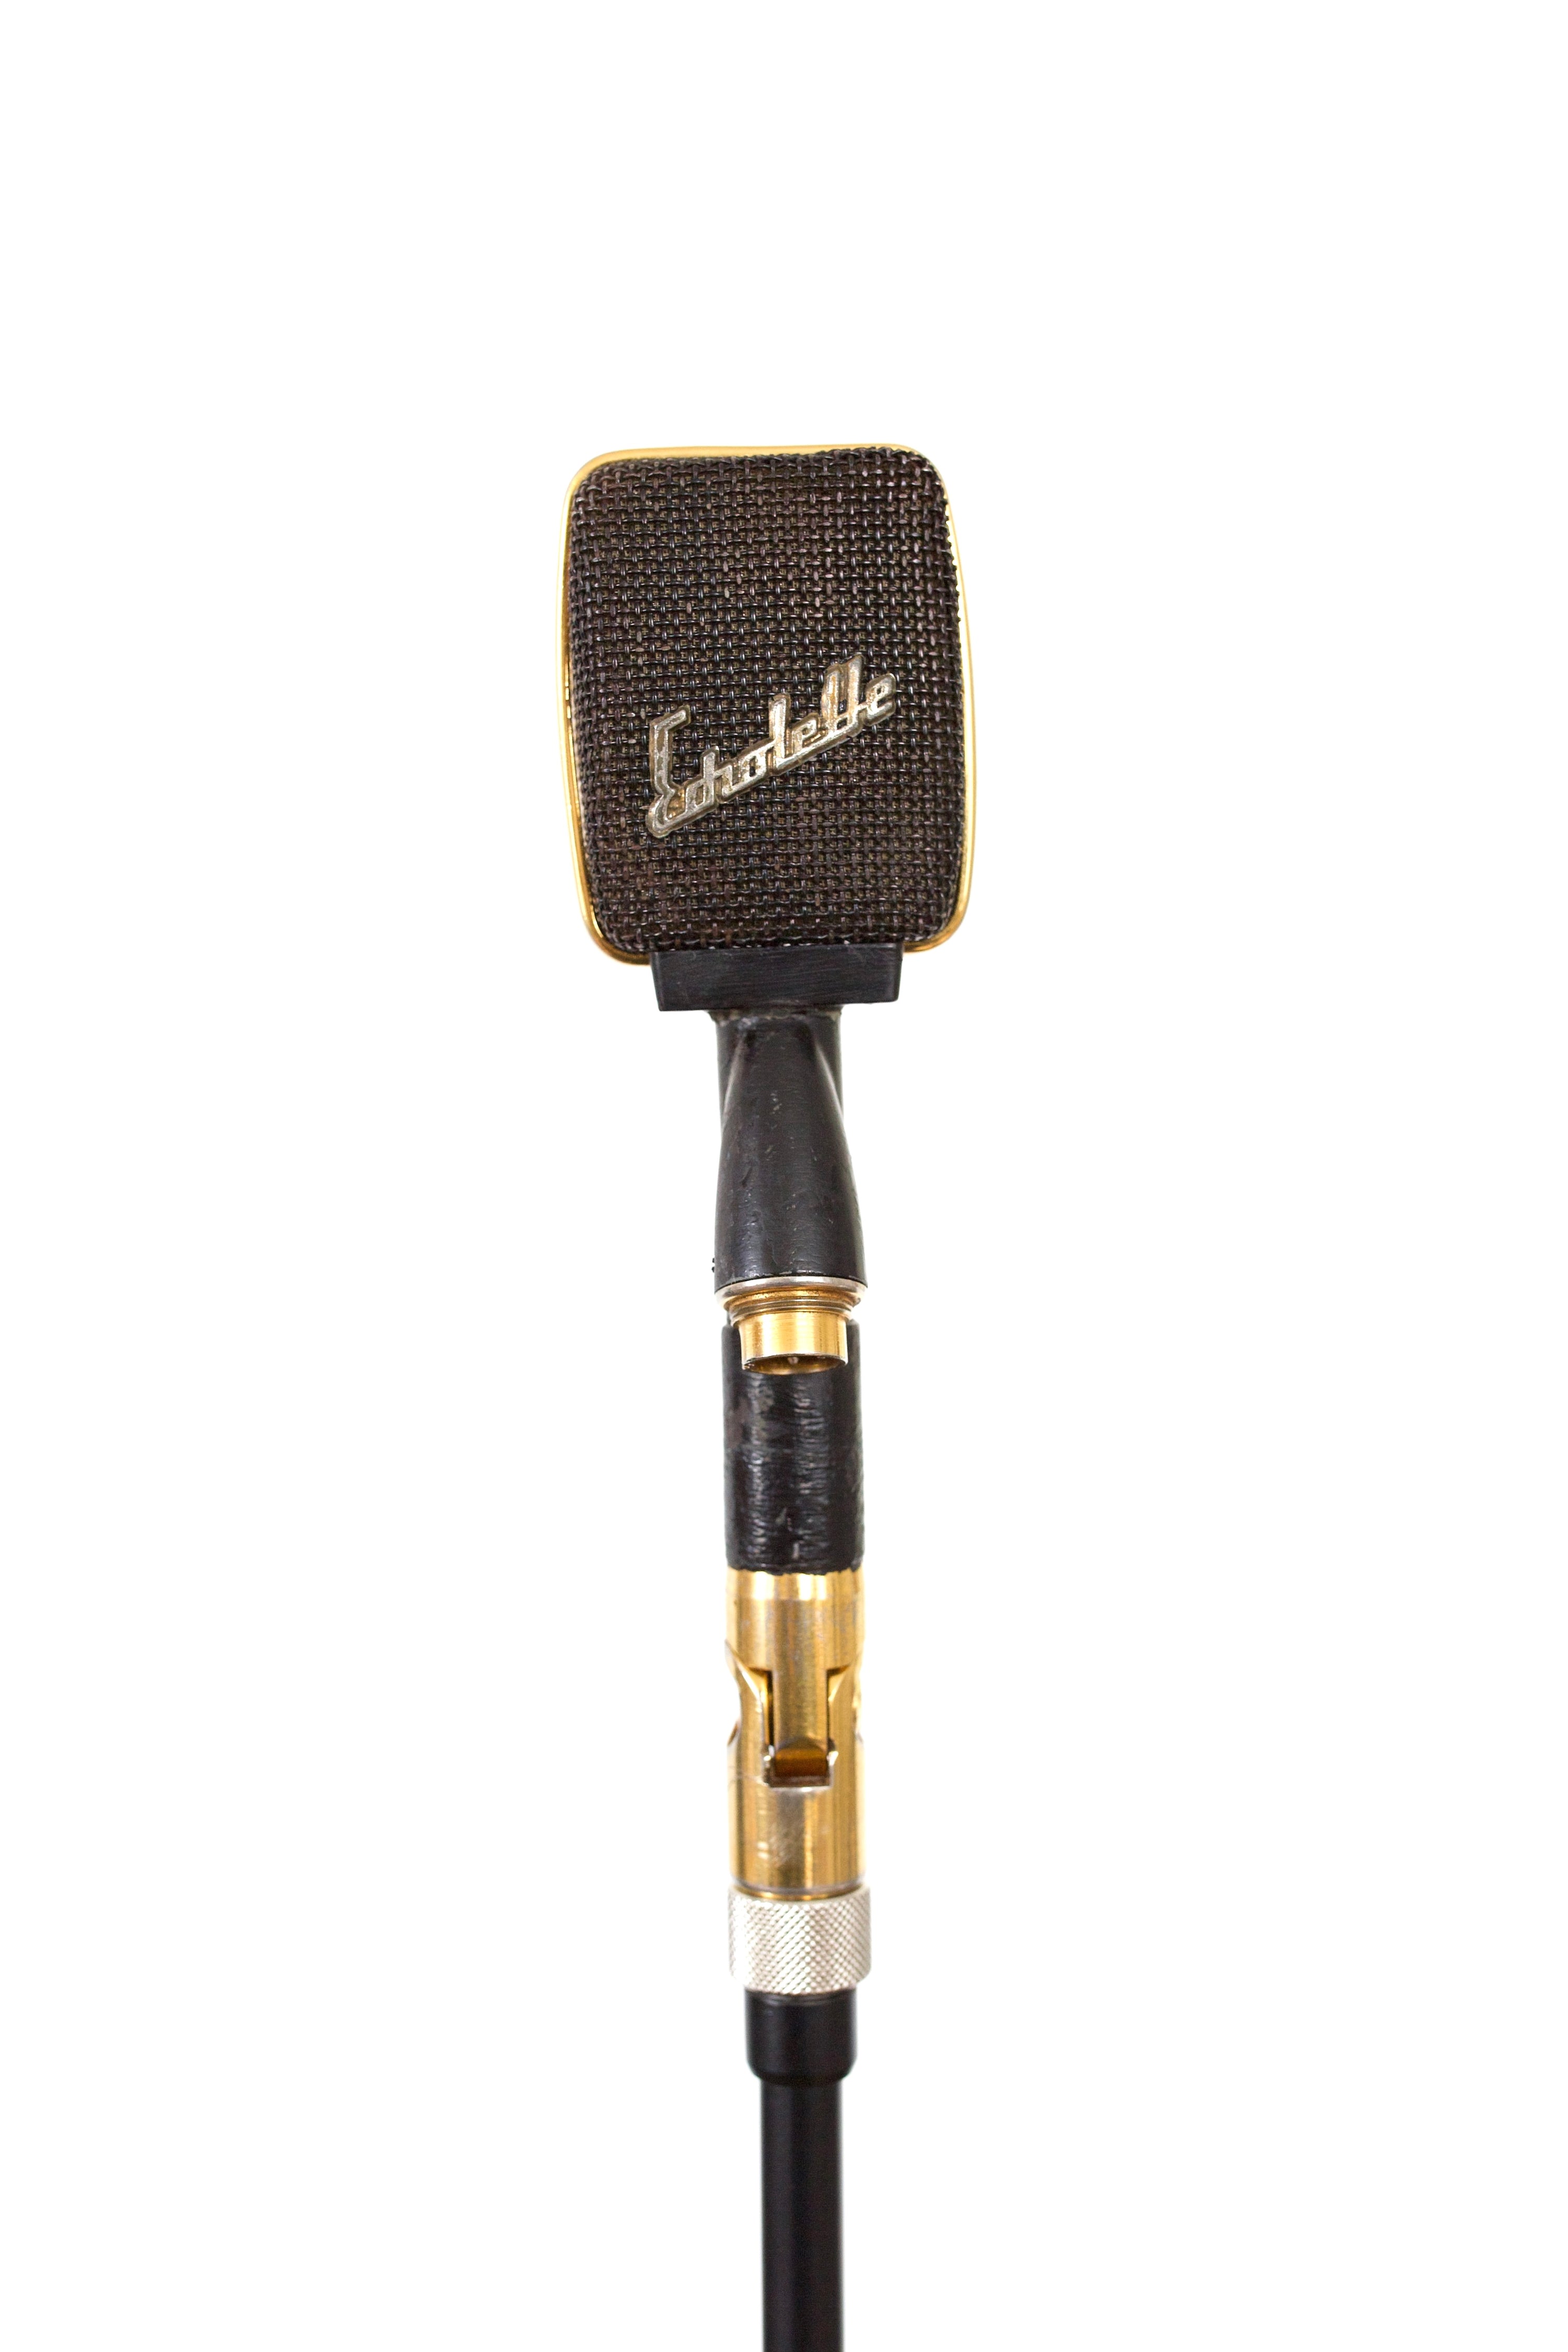 Echolette ES-14 (Sennheiser MD409N) Dynamic Microphone